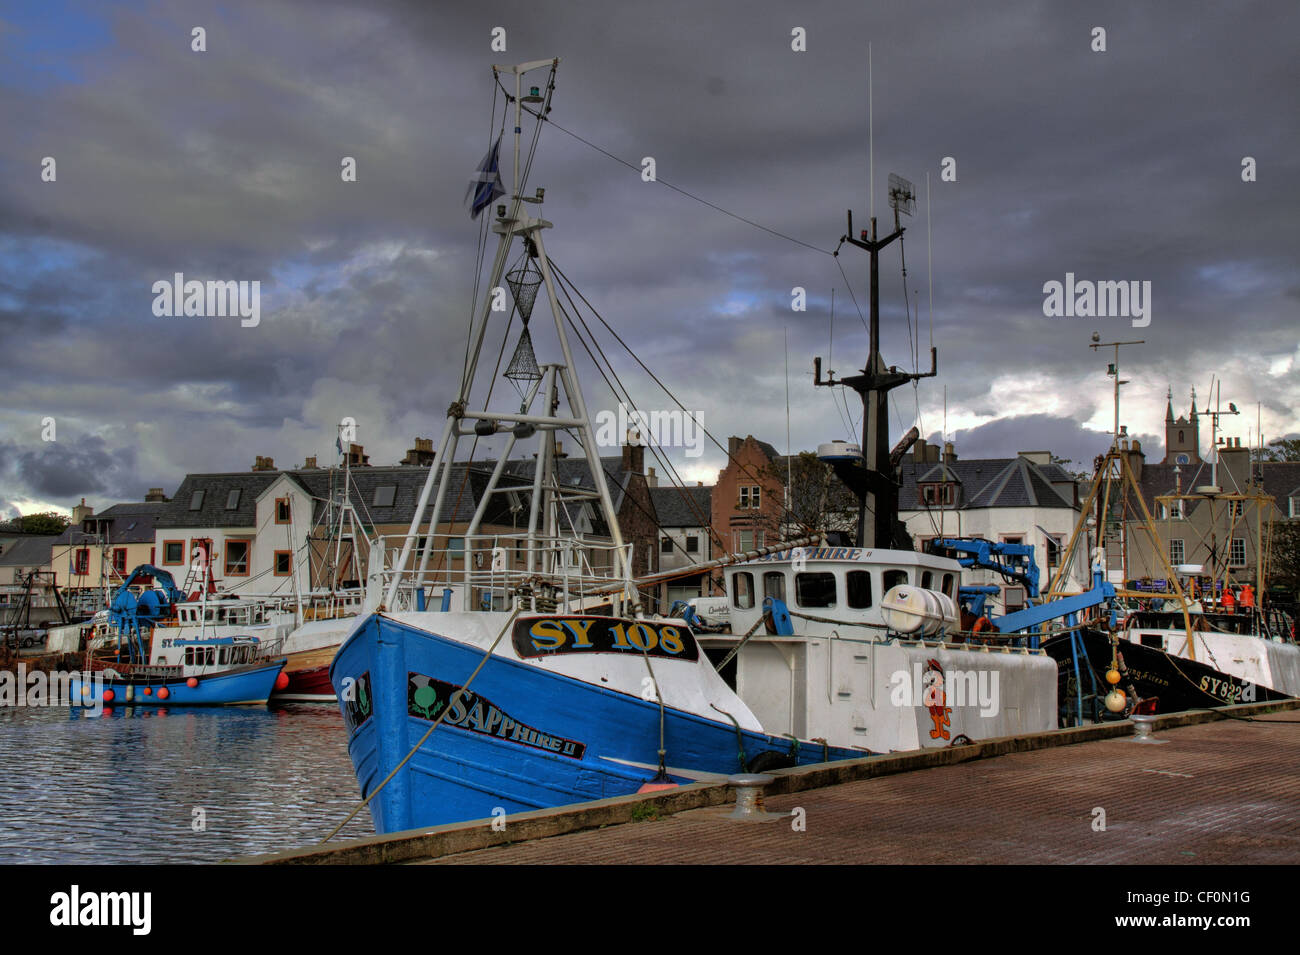 SY108 un de la flotte de pêche de Stornoway, Outer Hebrides, Ecosse, Royaume-Uni Banque D'Images